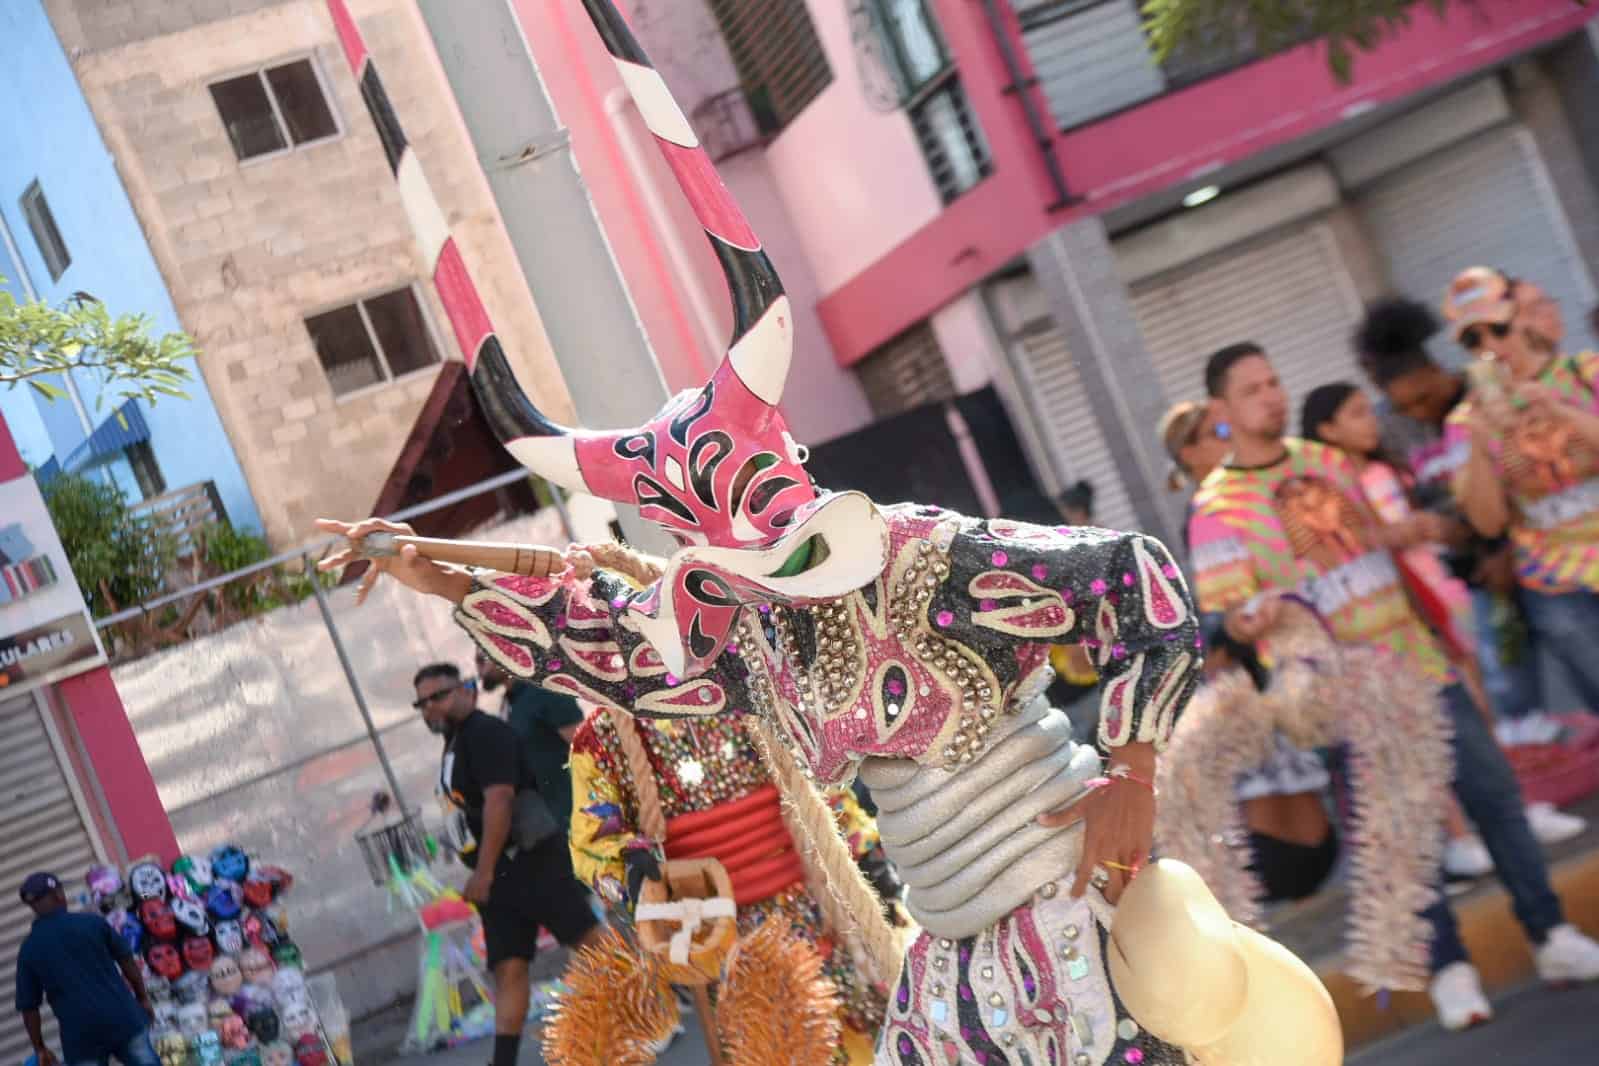 Suspenden próxima salida del carnaval en Santiago por muerte de niño – El Profe Show